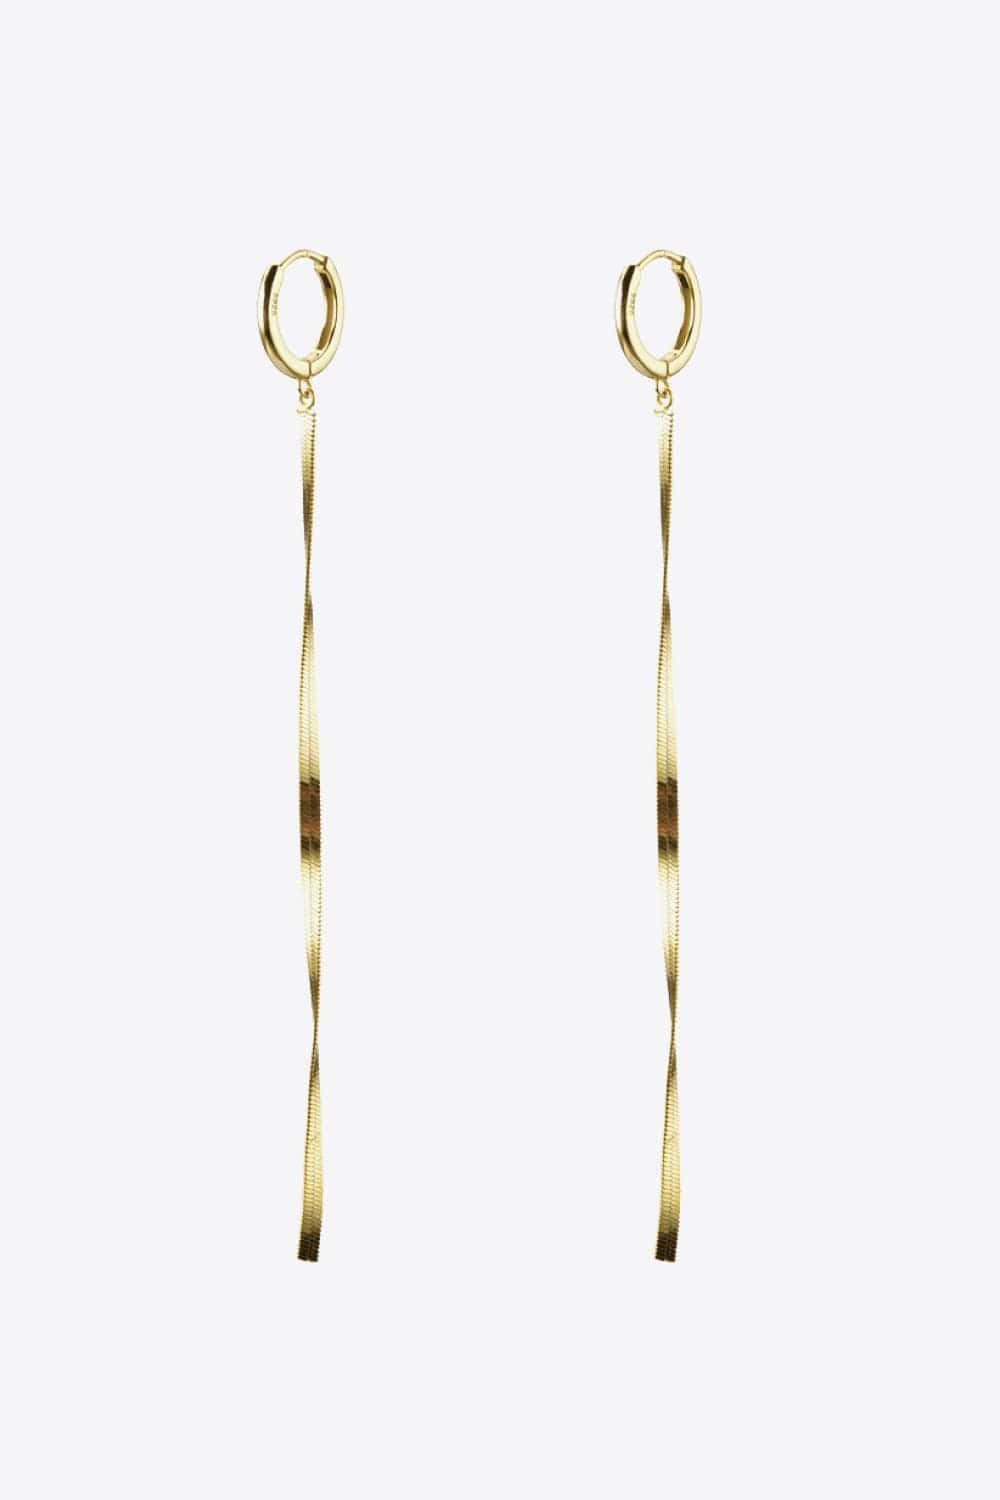 925 Sterling Silver Long Snake Chain Earrings - Body By J'ne